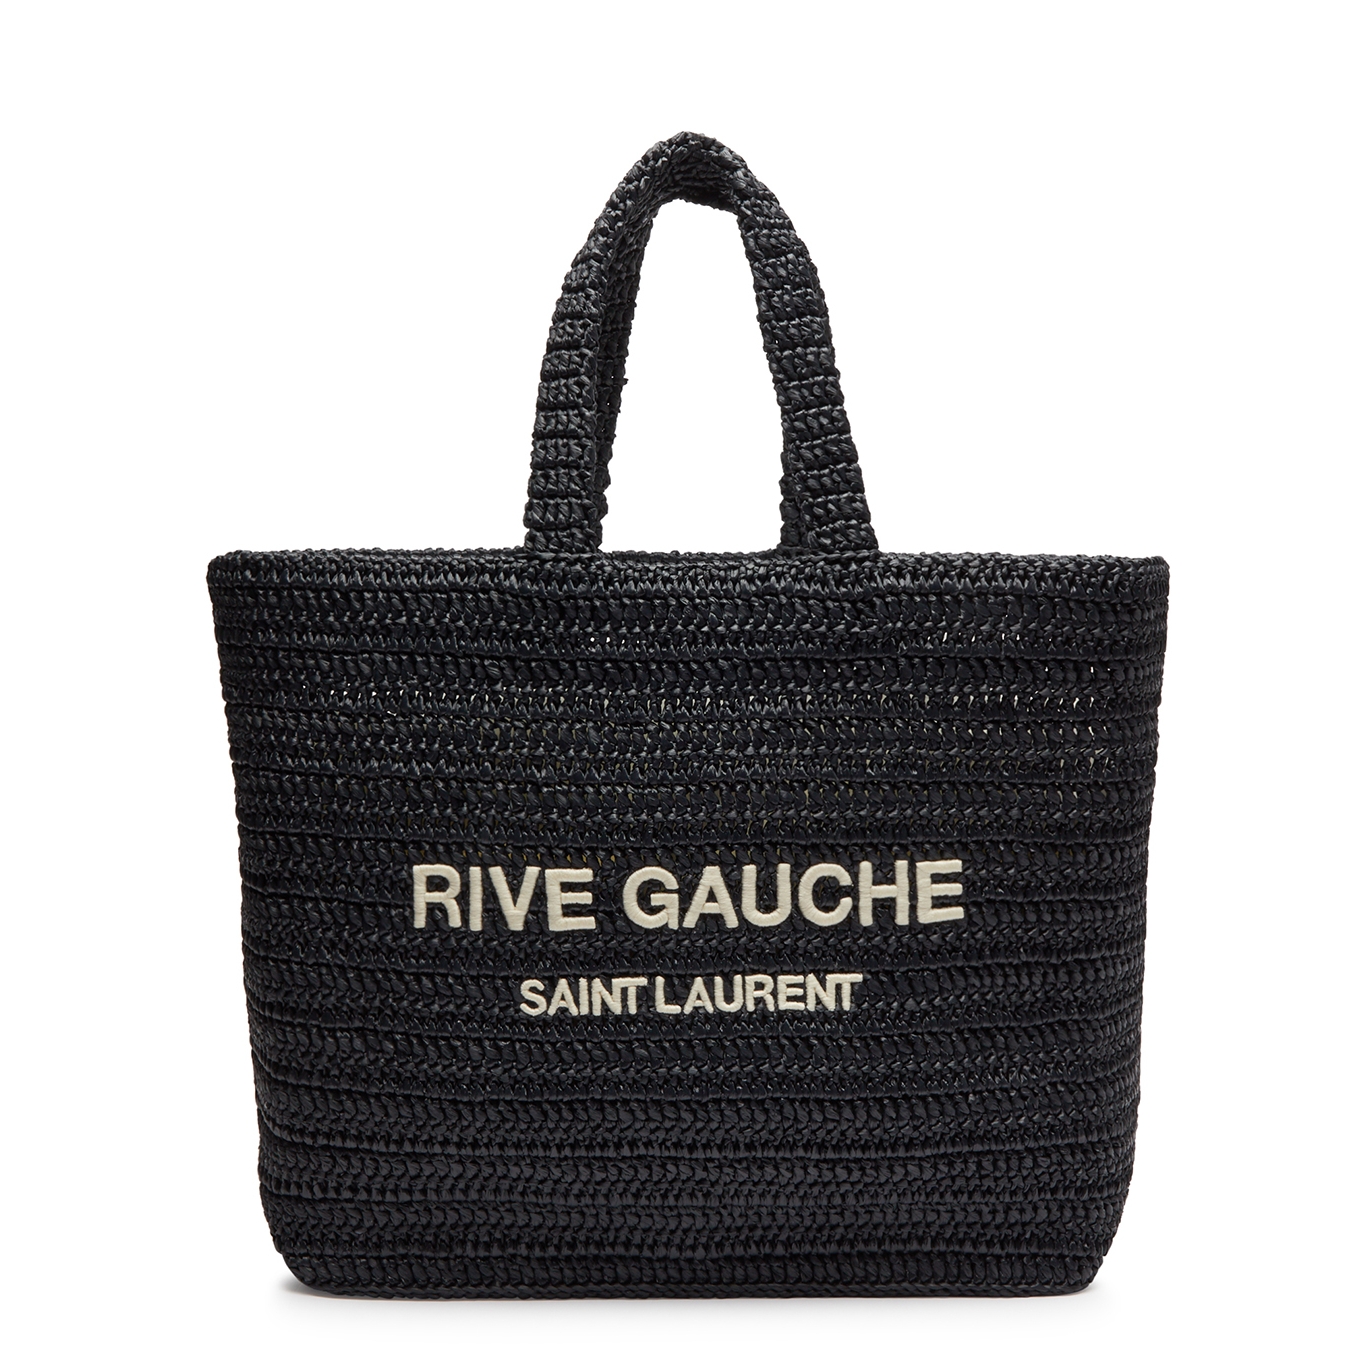 Saint Laurent Rive Gauche Raffia Tote - Black And White